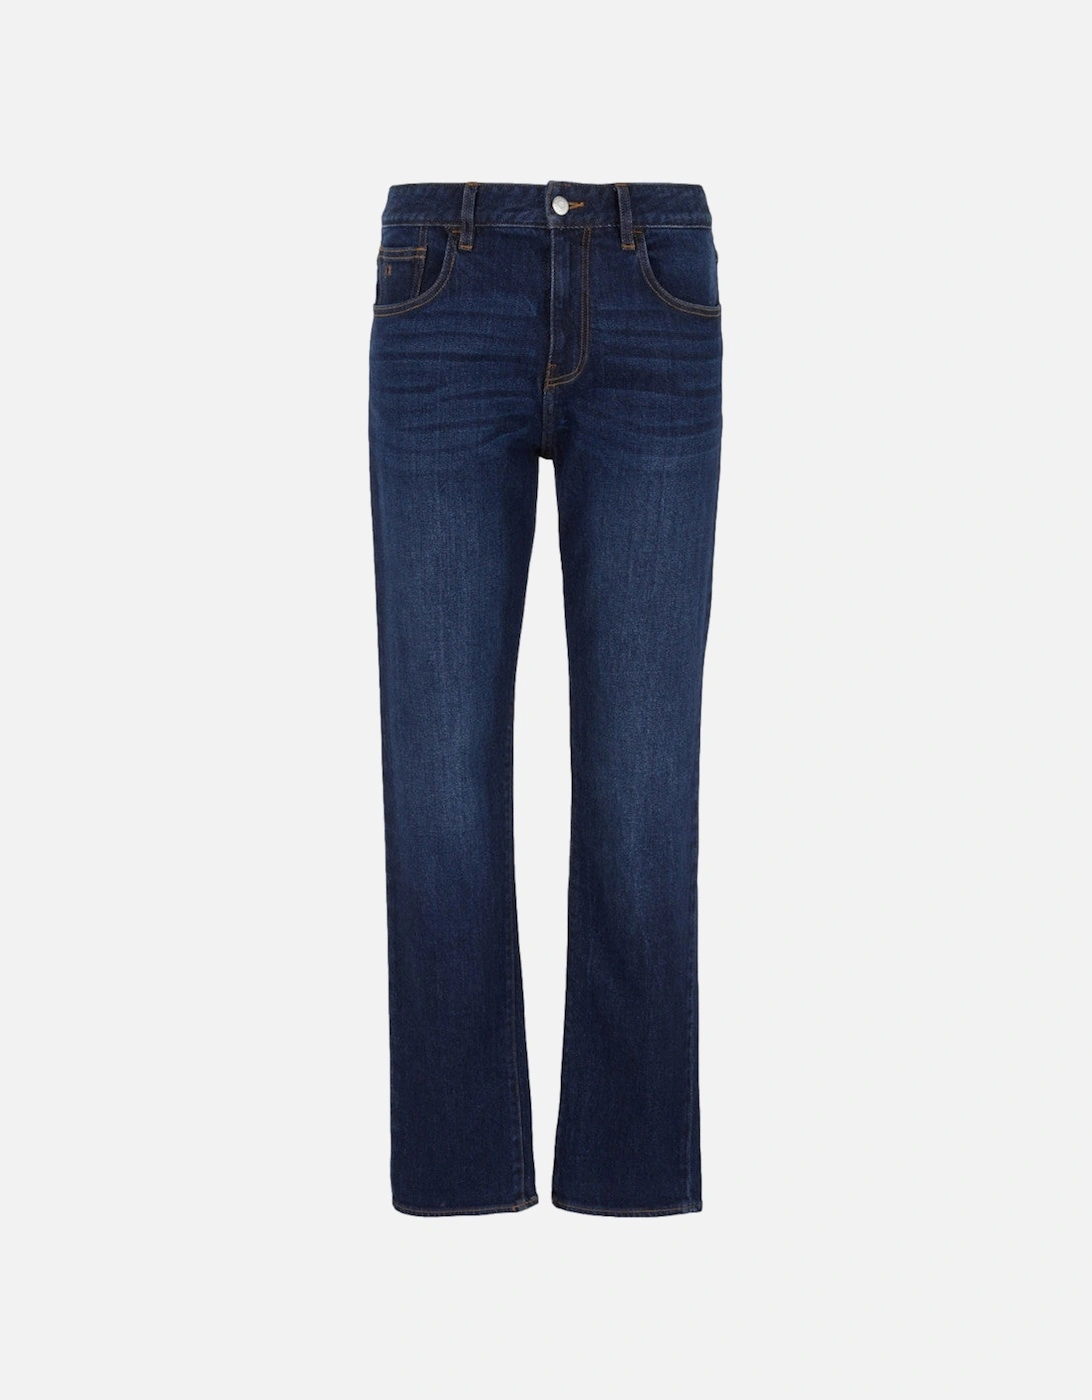 J13 Slim Fit Jeans Z2SHZ 1500 Indigo Denim, 3 of 2